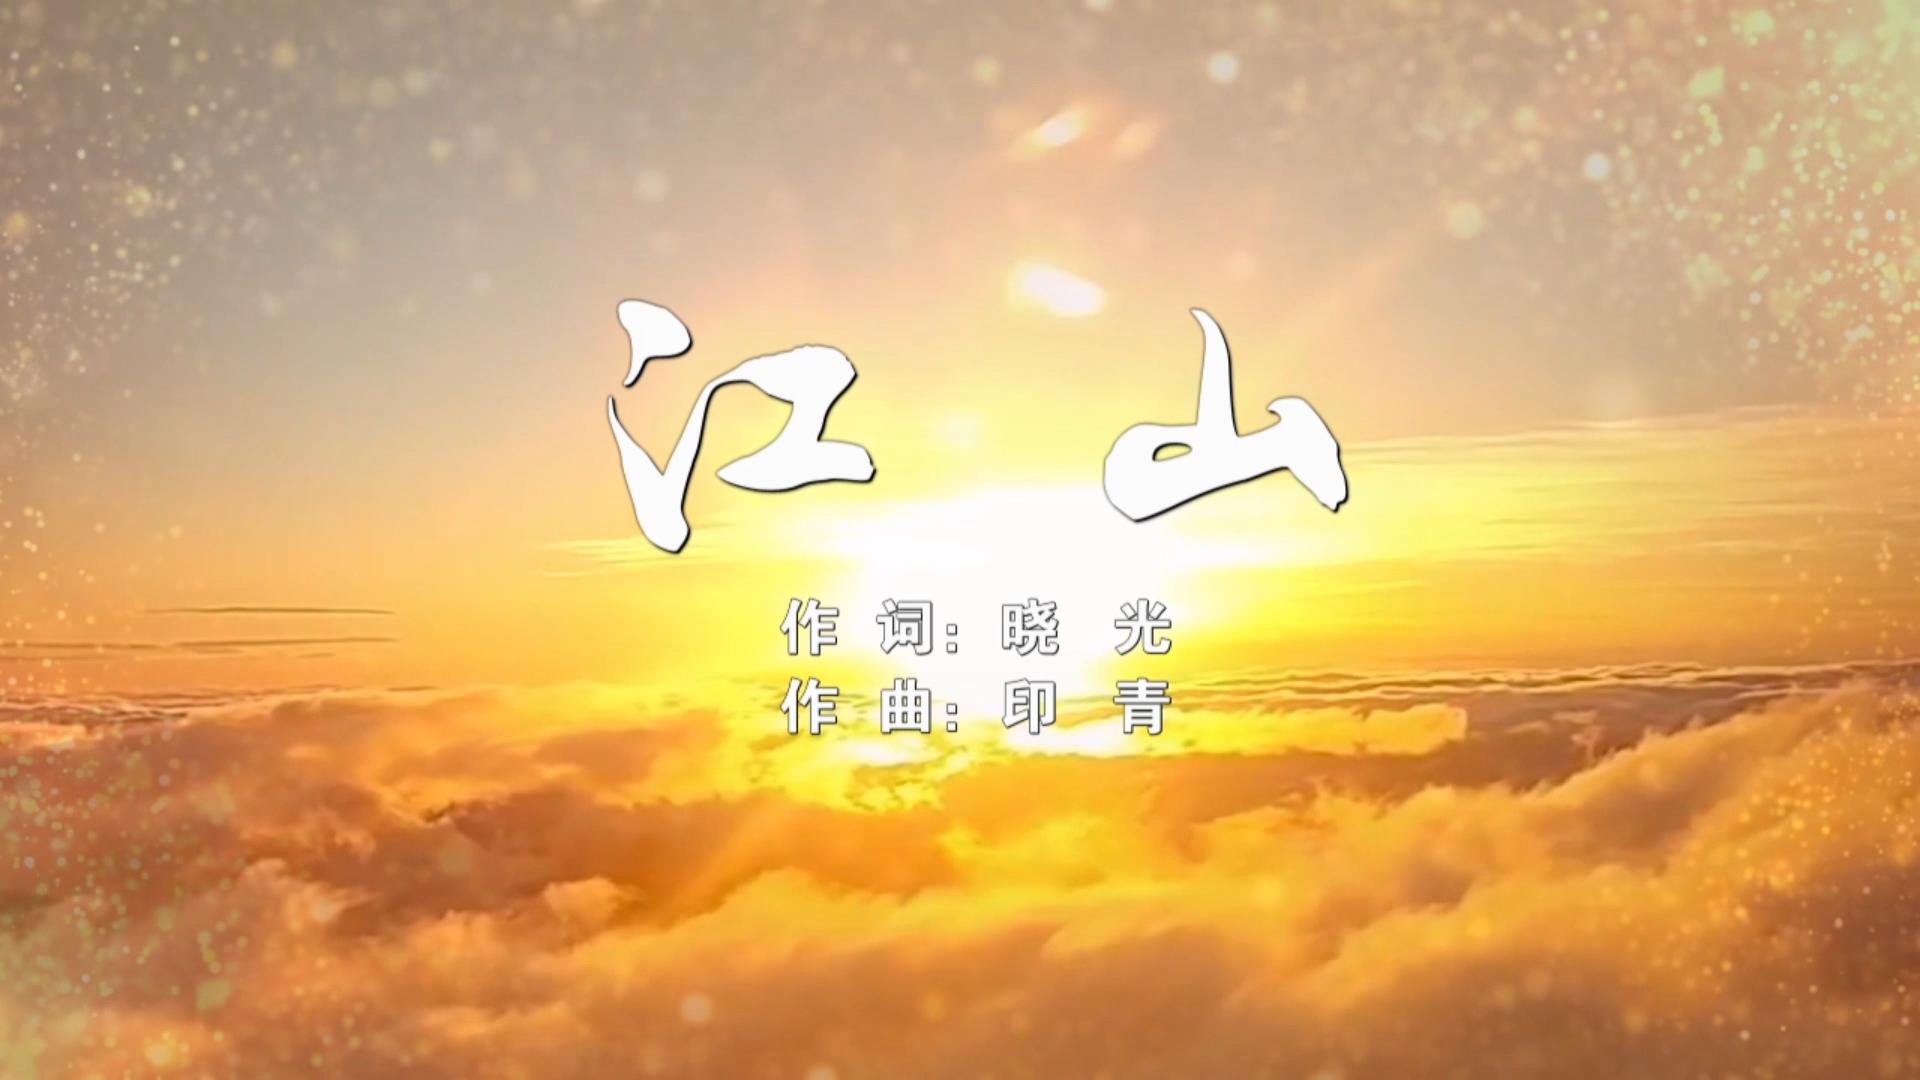 江山MV字幕配乐伴奏舞台演出LED背景大屏幕视频素材TV